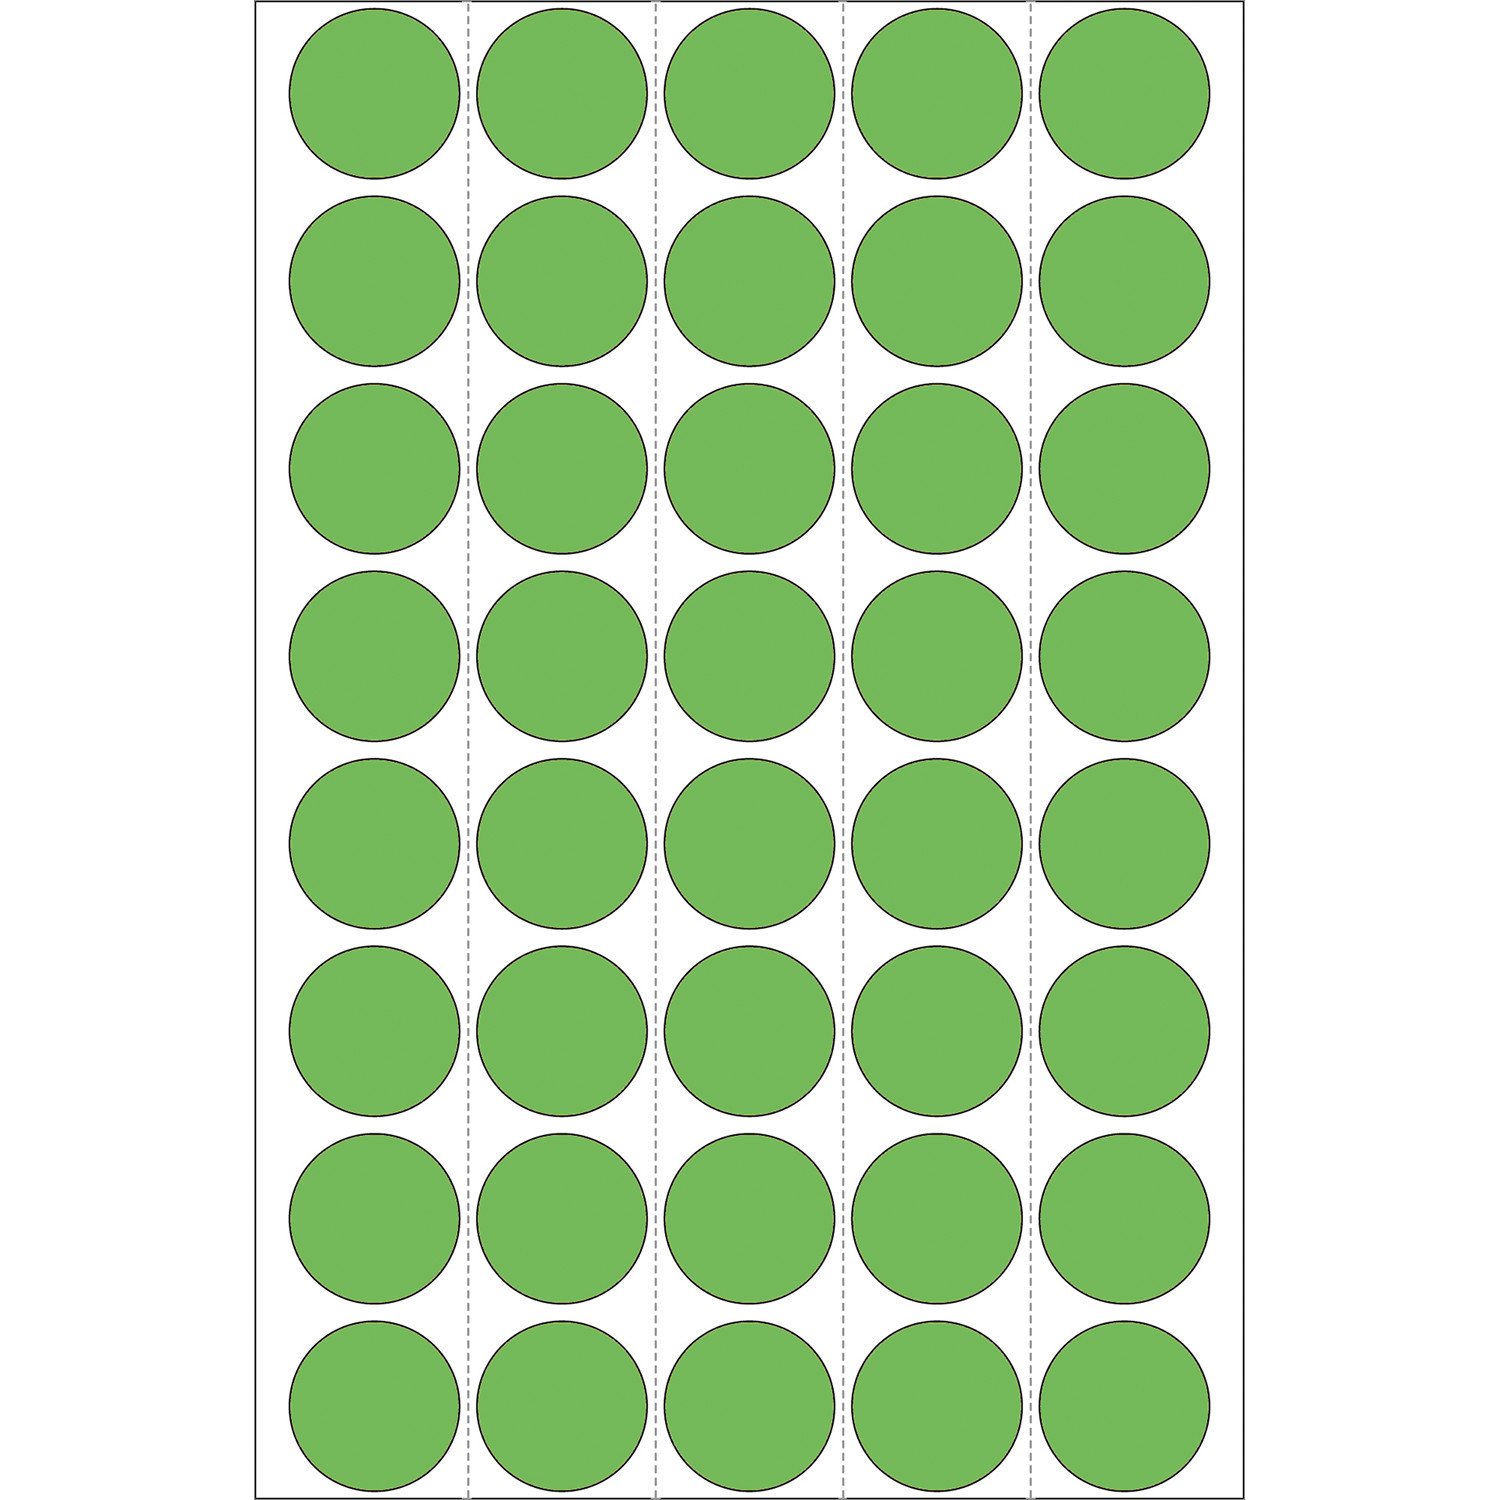 HERMA Papier - permanenter Klebstoff - grün - 19 mm rund 1280 Etikett(en) (32 Bogen x 40)